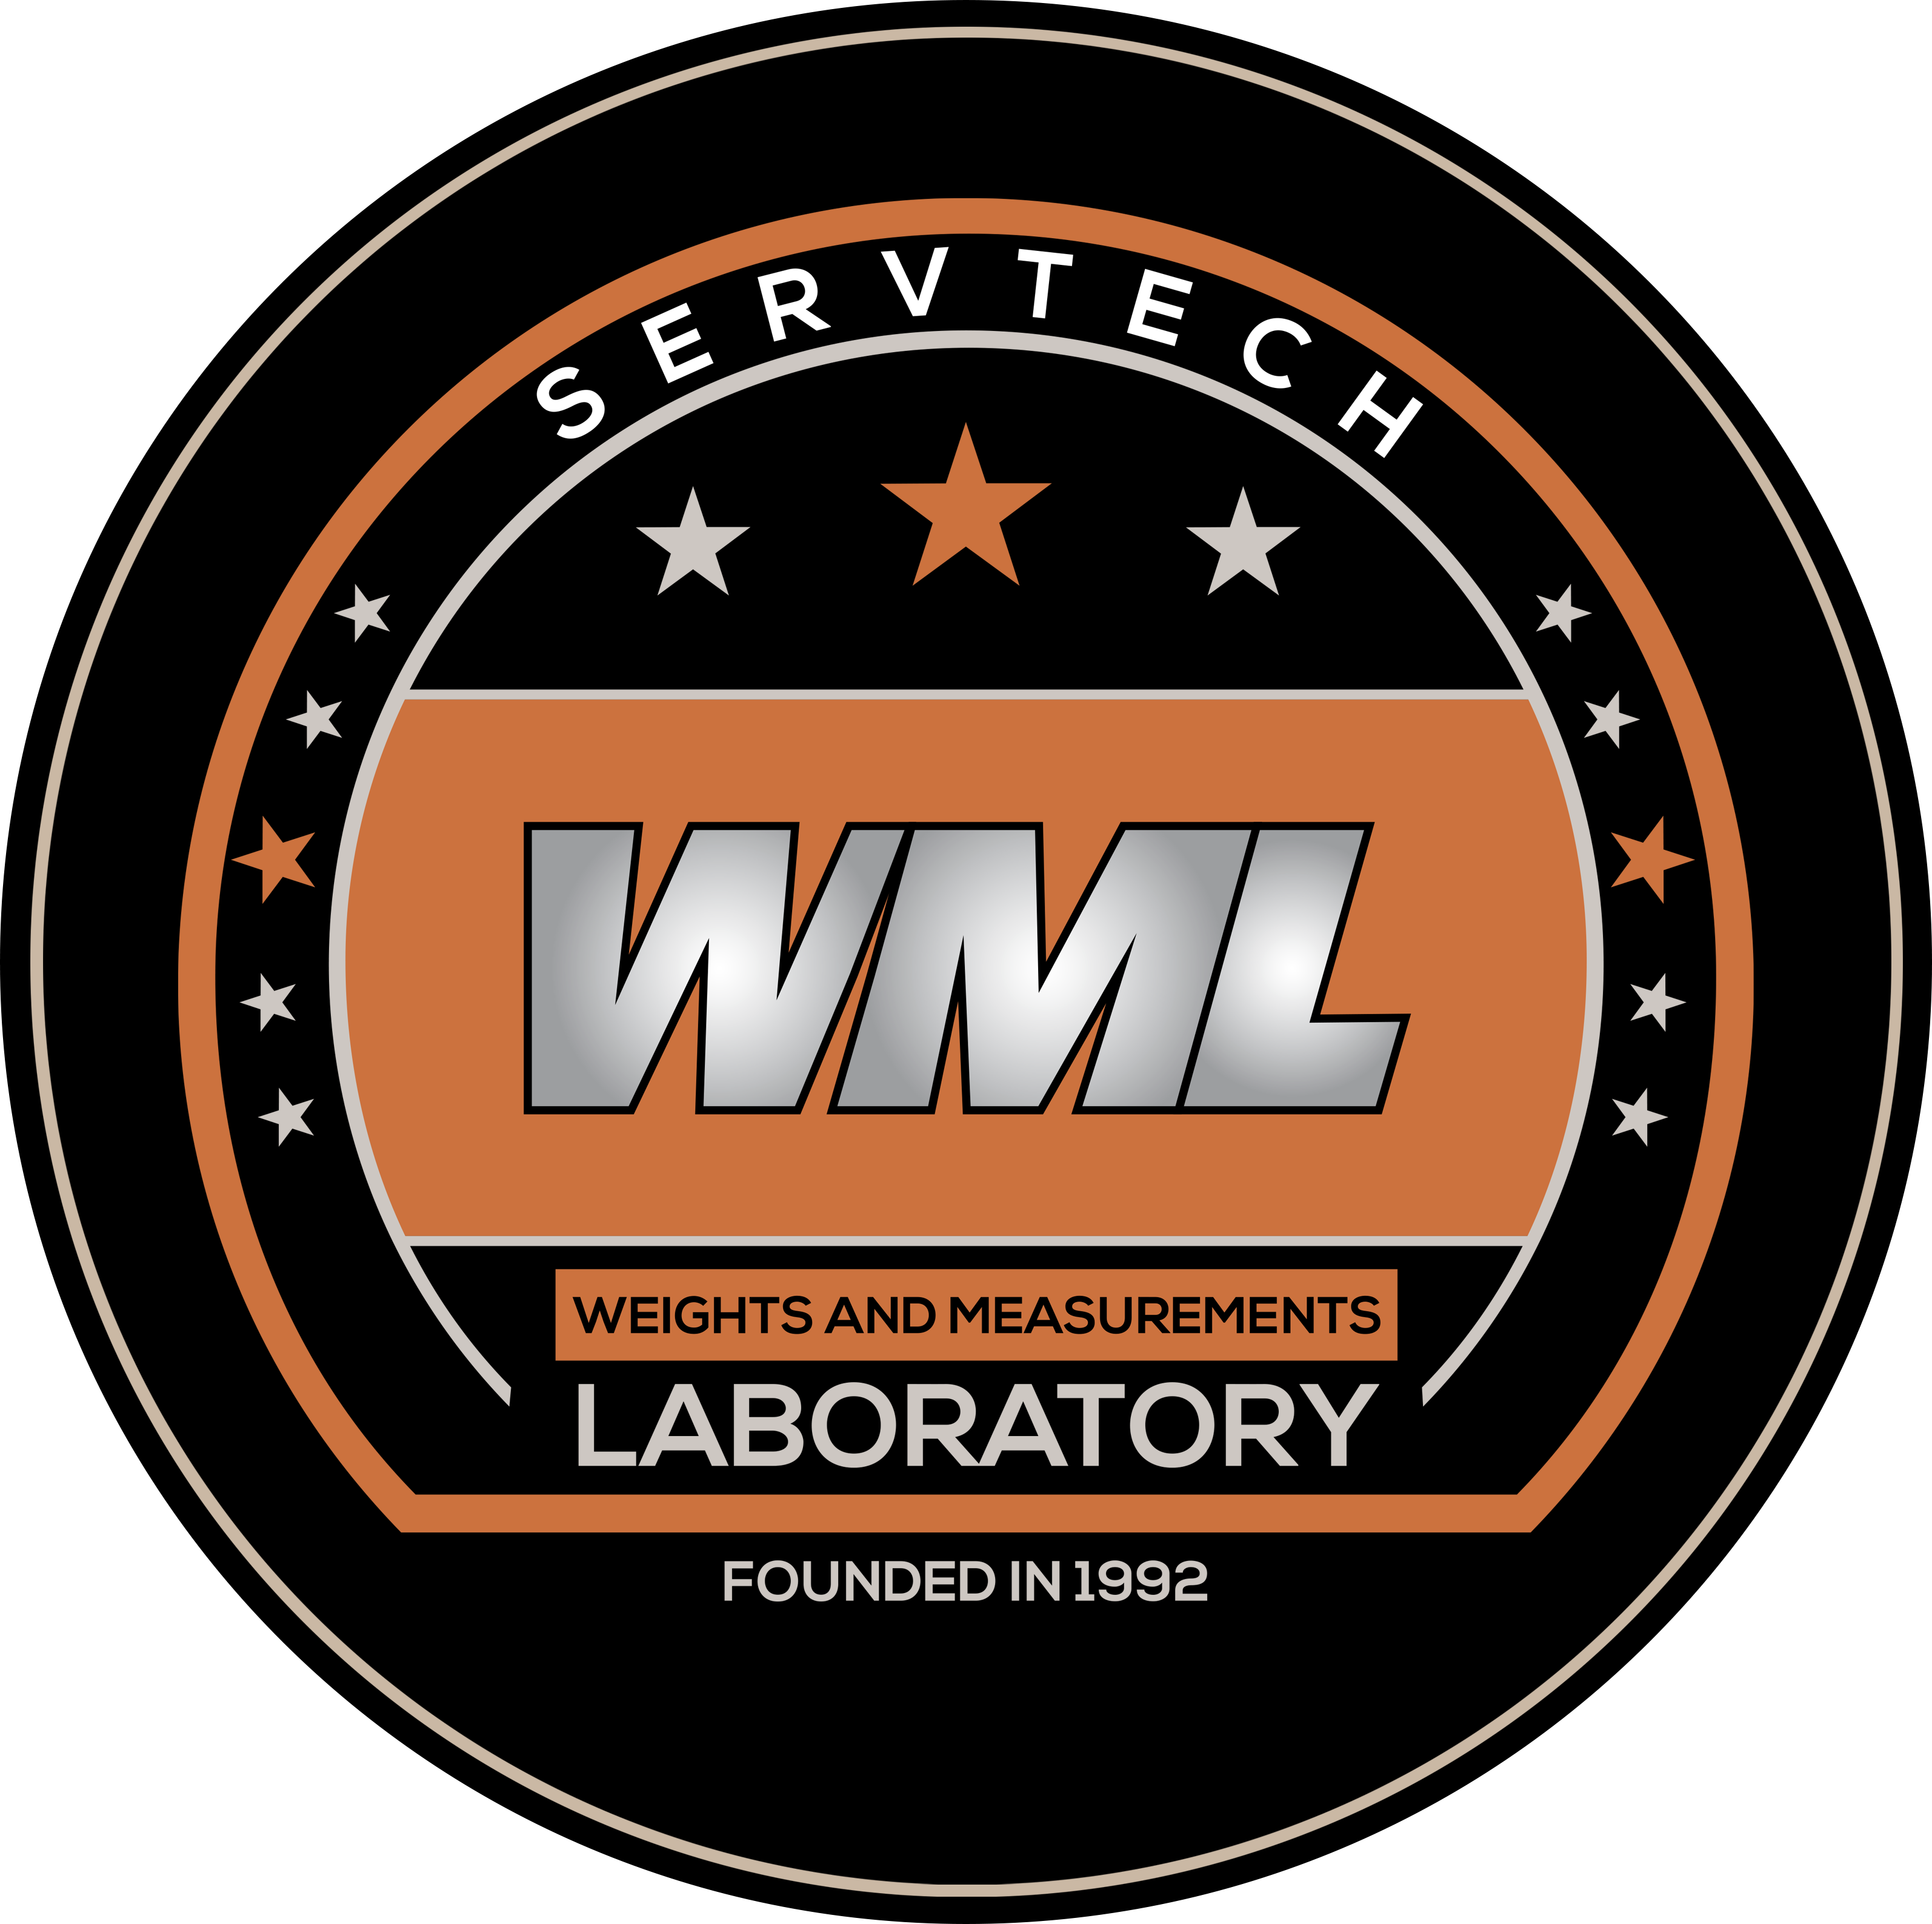 Servtech WML Logo